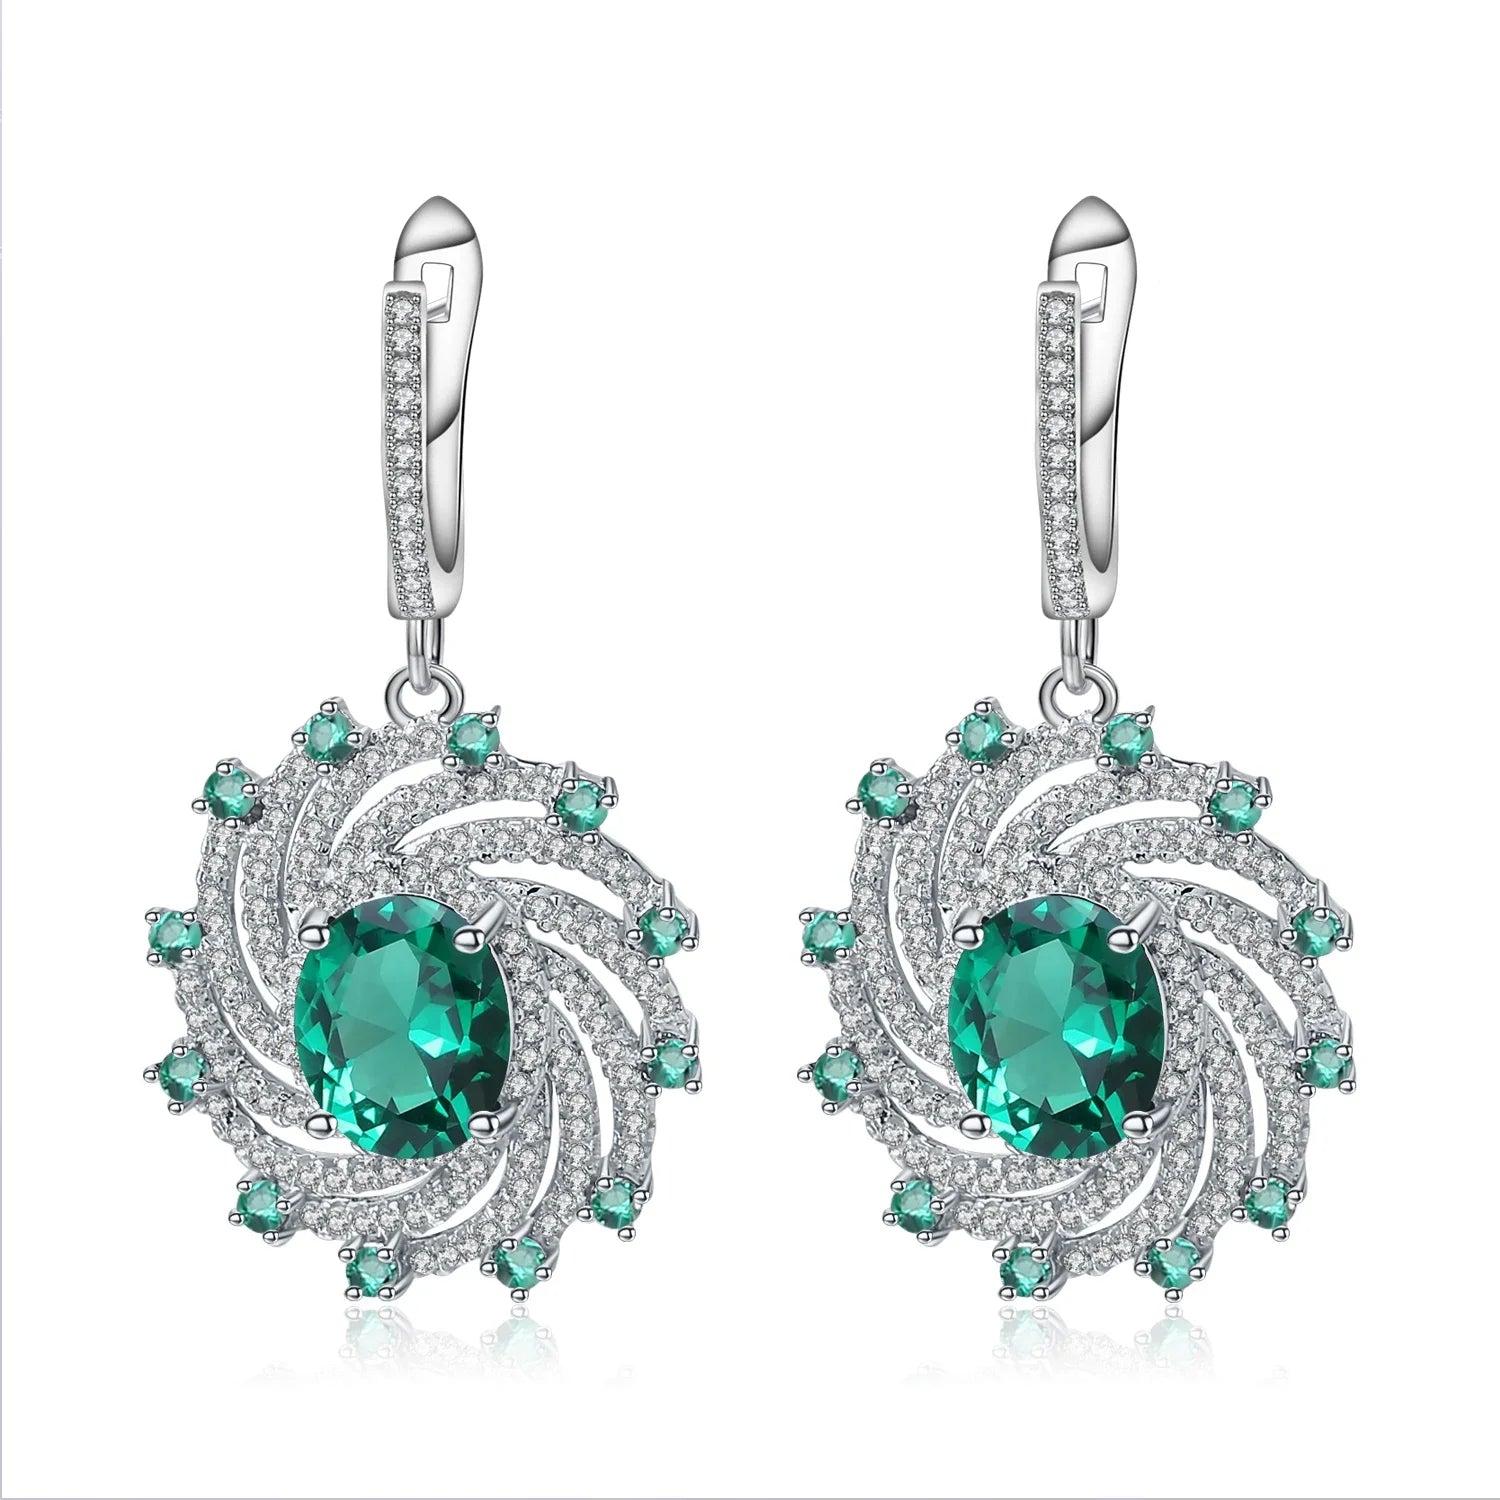 GEM'S BALLET Huge Luxury Nano Emerald Dangle Earrings Solid 925 Sterling Silver Vintage Earrings For Women Gift Fine Jewelry Nano Emerald CHINA